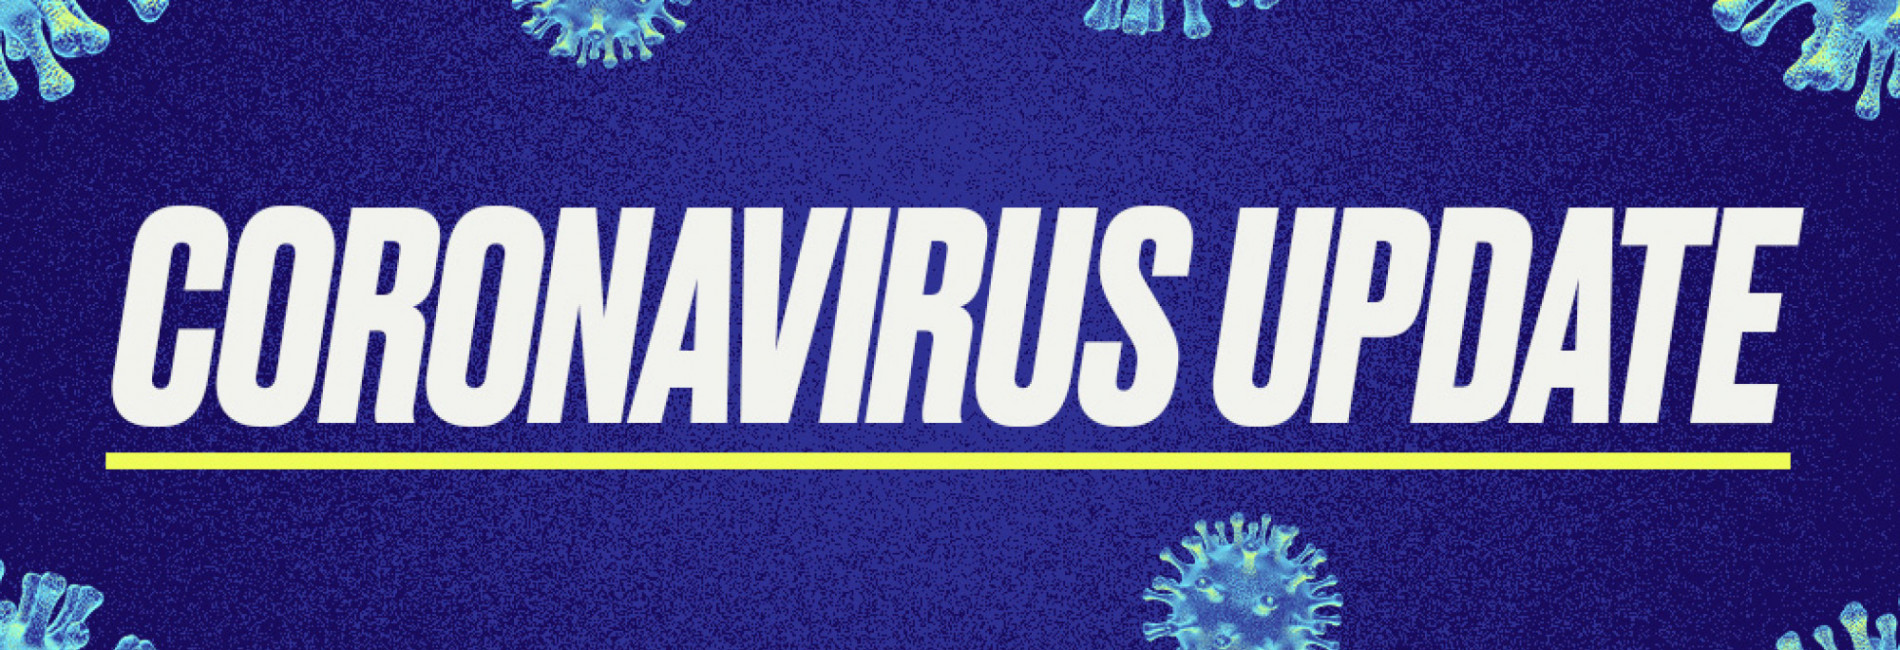 Coronavirus Update - October 2020